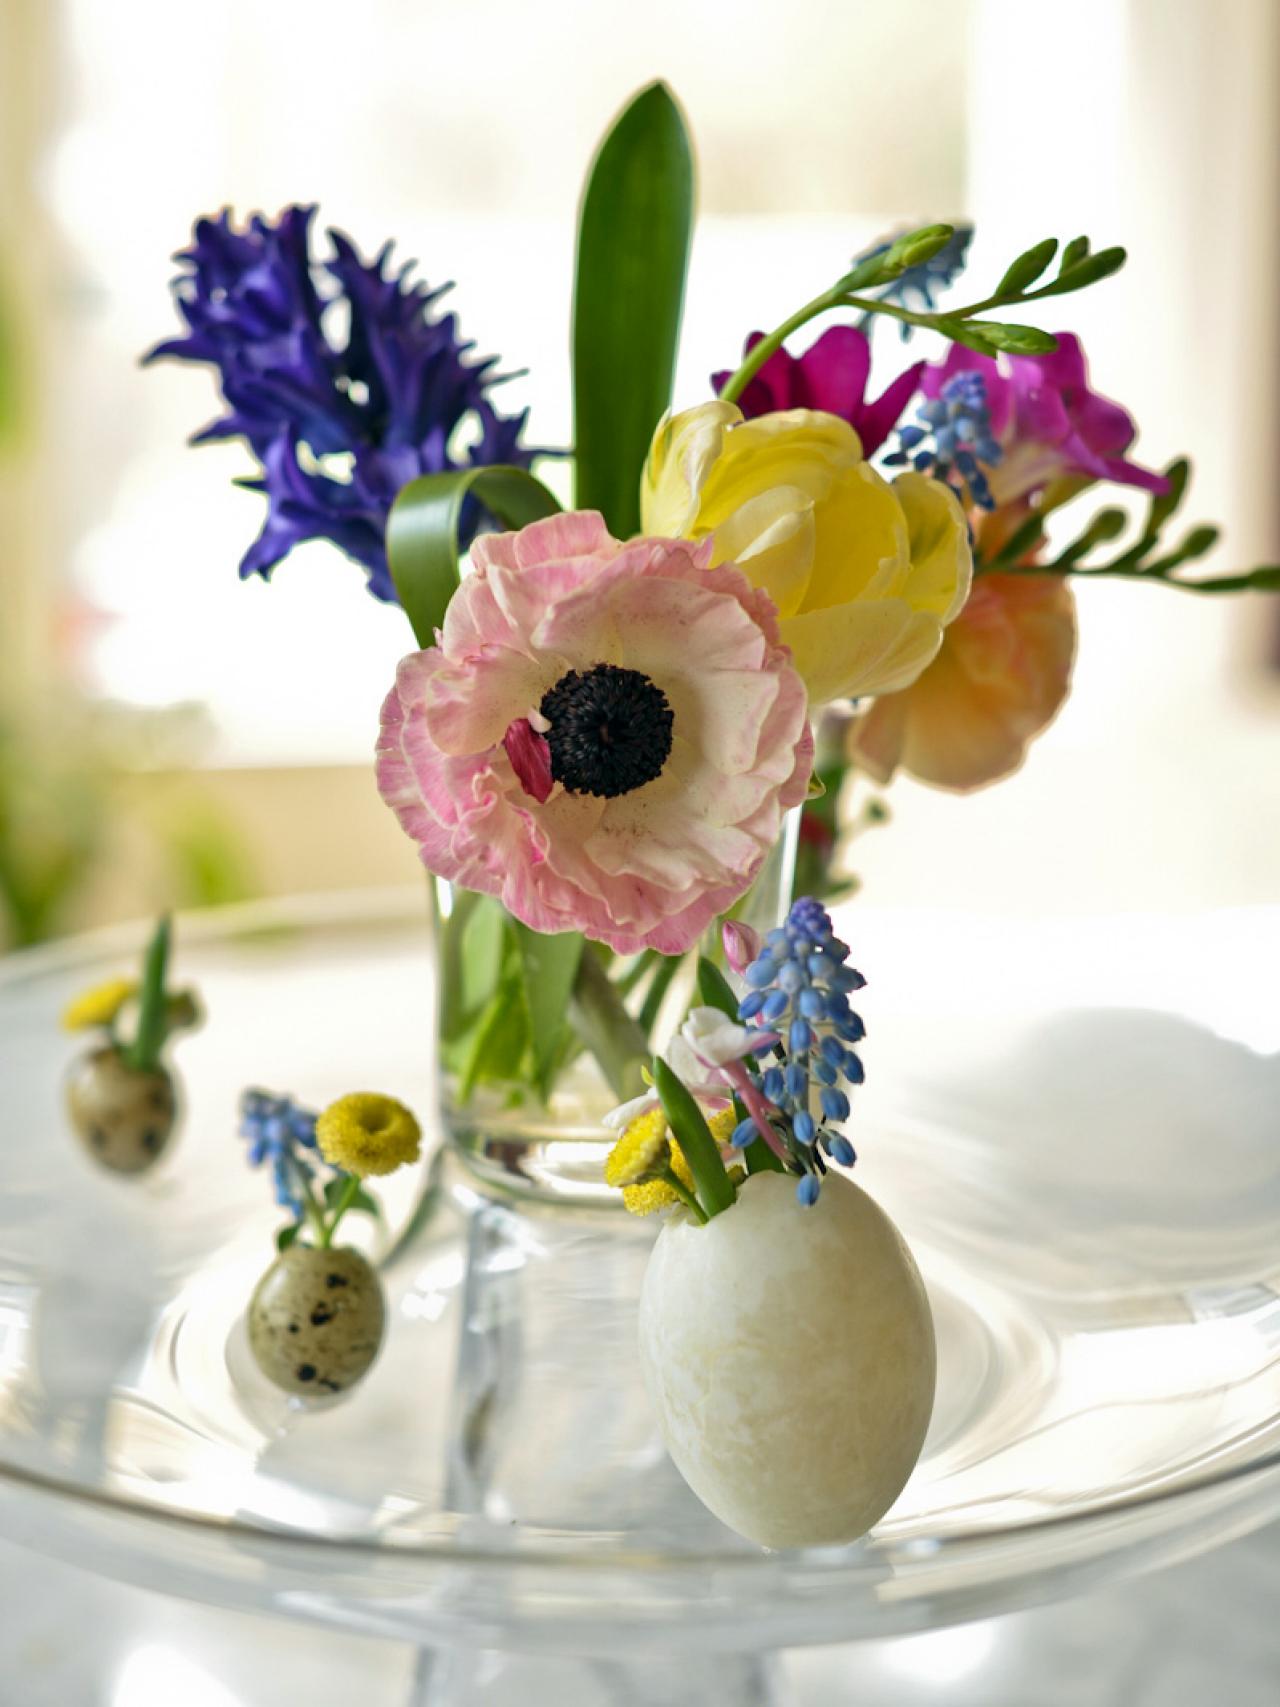 décoration maison fleurs printemps joli élégant stylé moderne